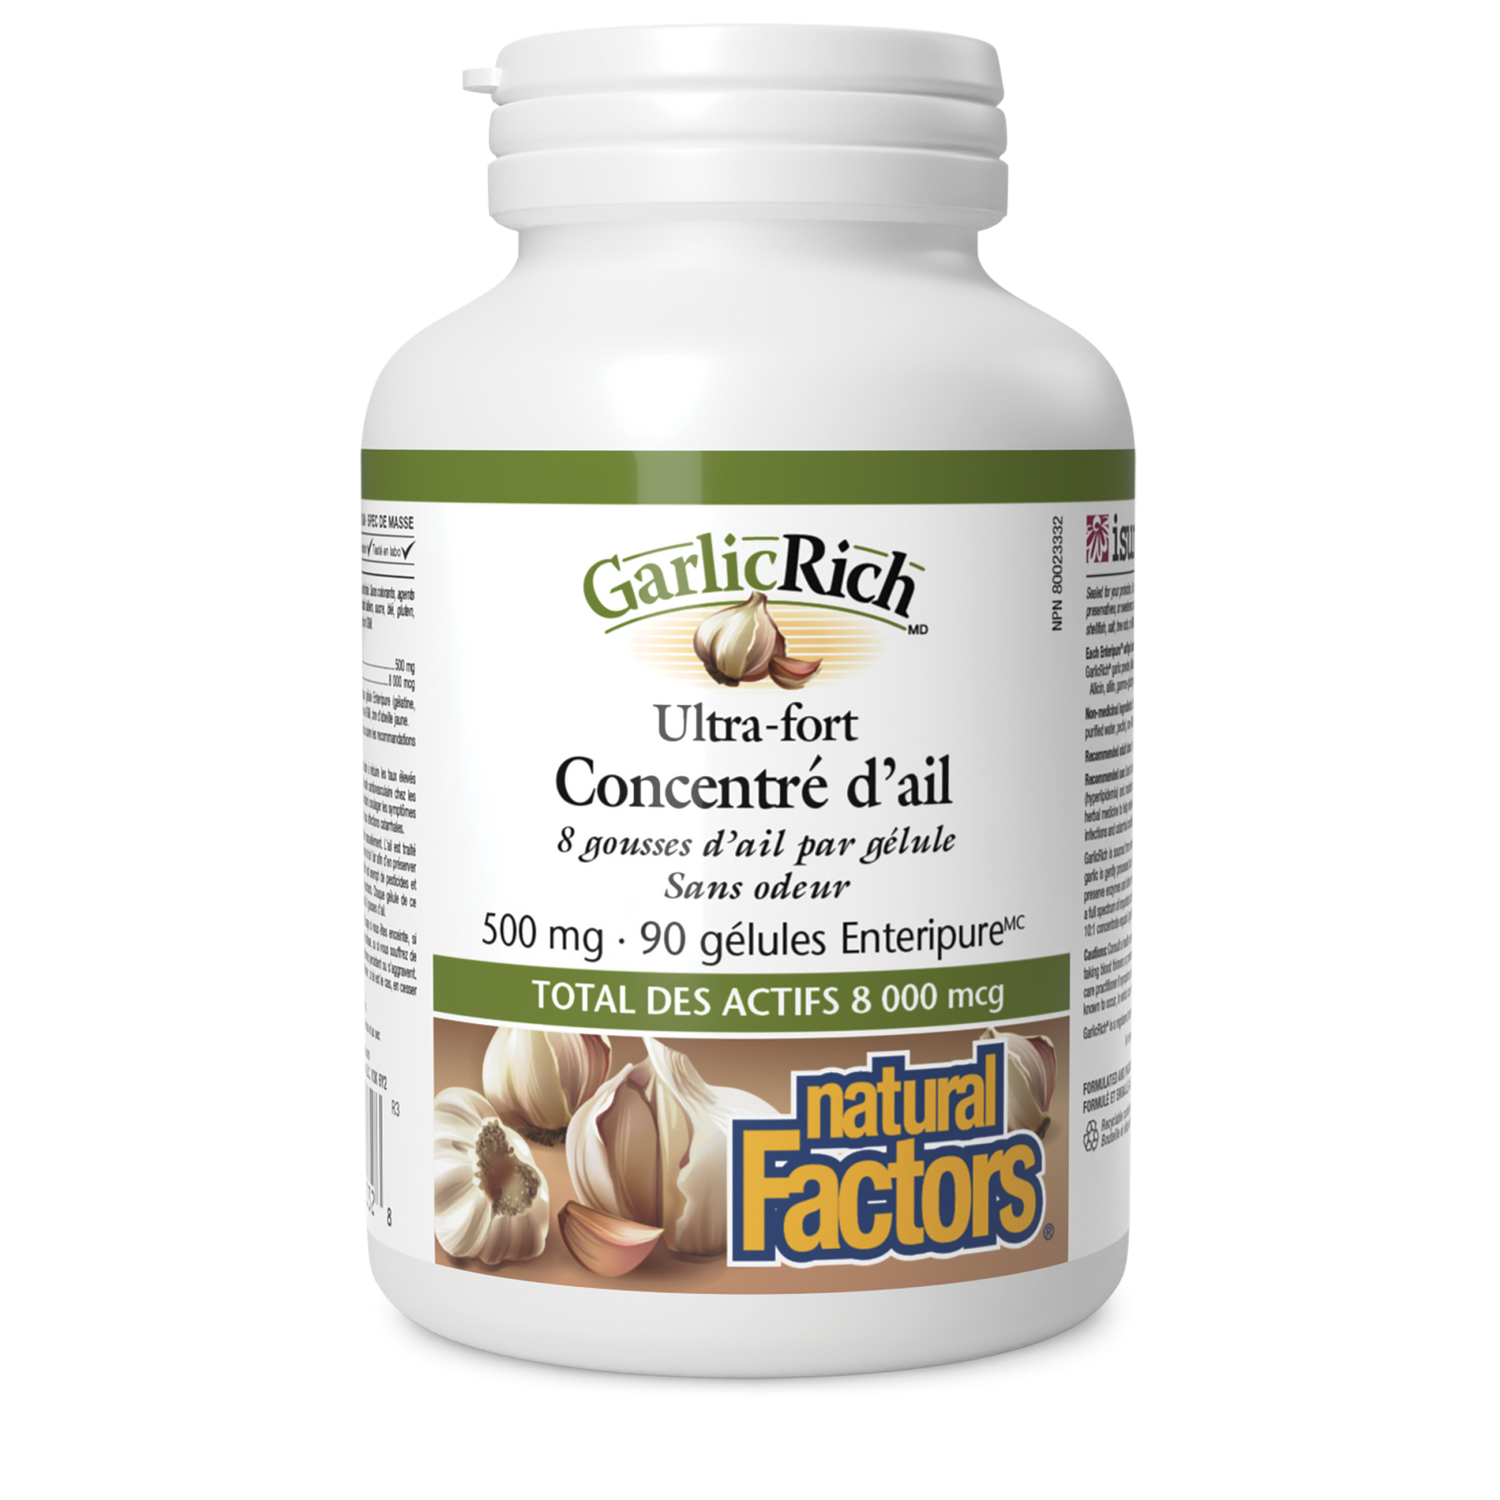 GarlicRich Ultra-fort Concentré d’ail 500 mg, Natural Factors|v|image|2332